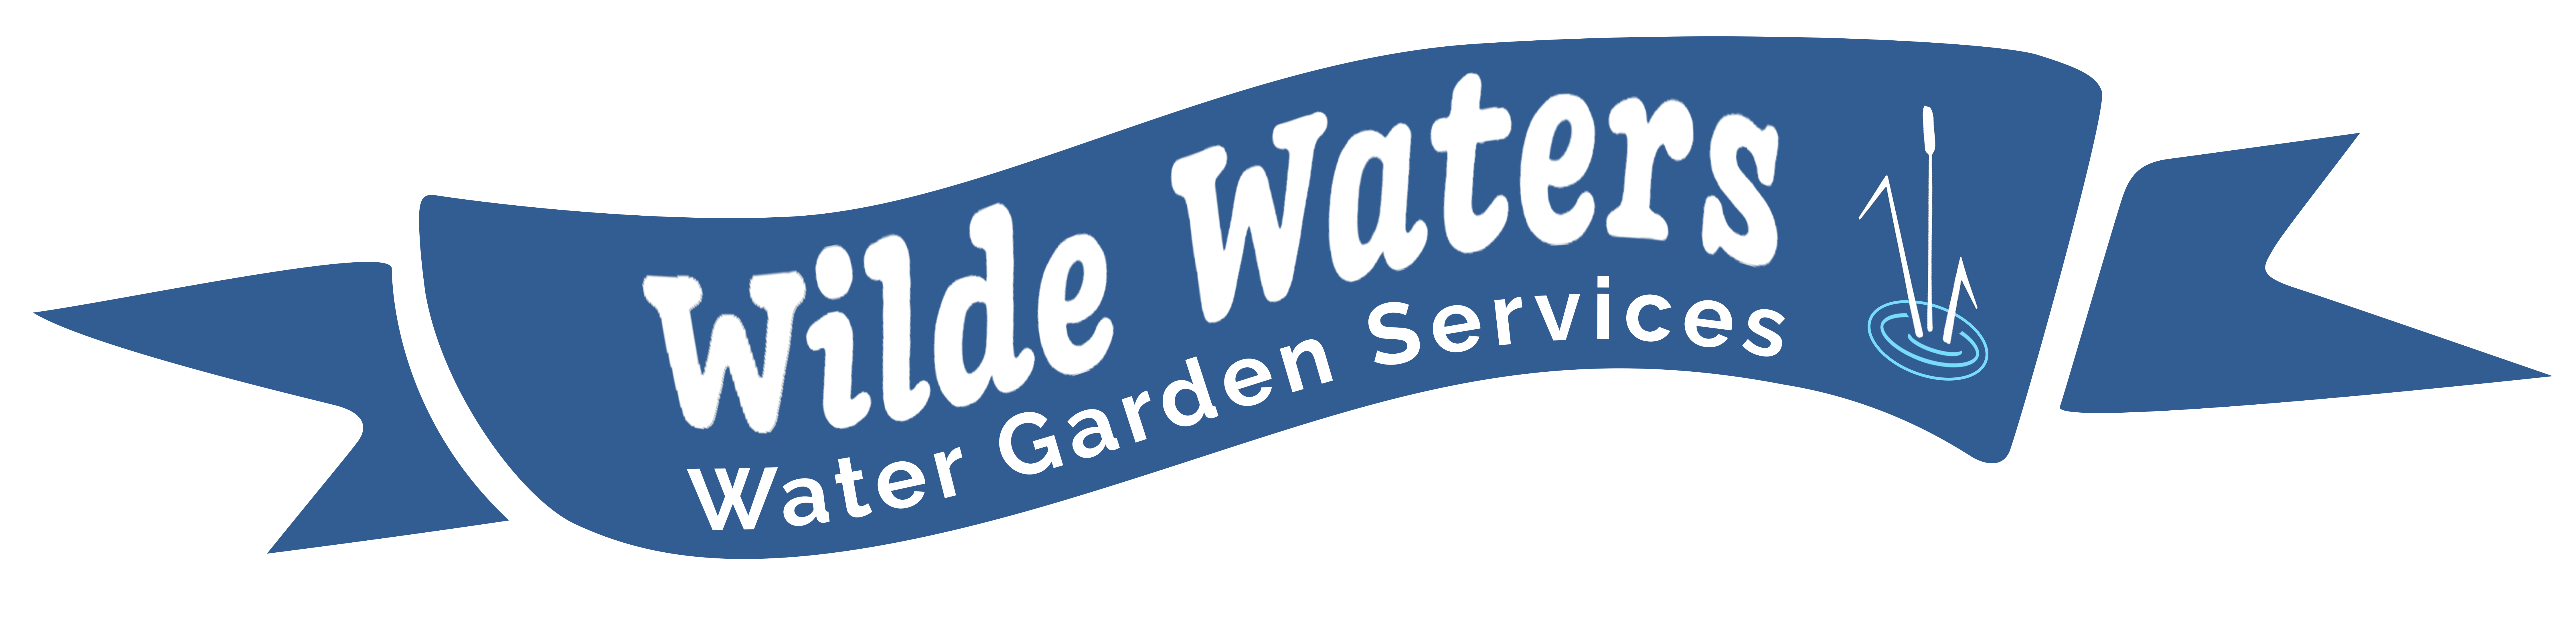 Wilde Waters Ltd